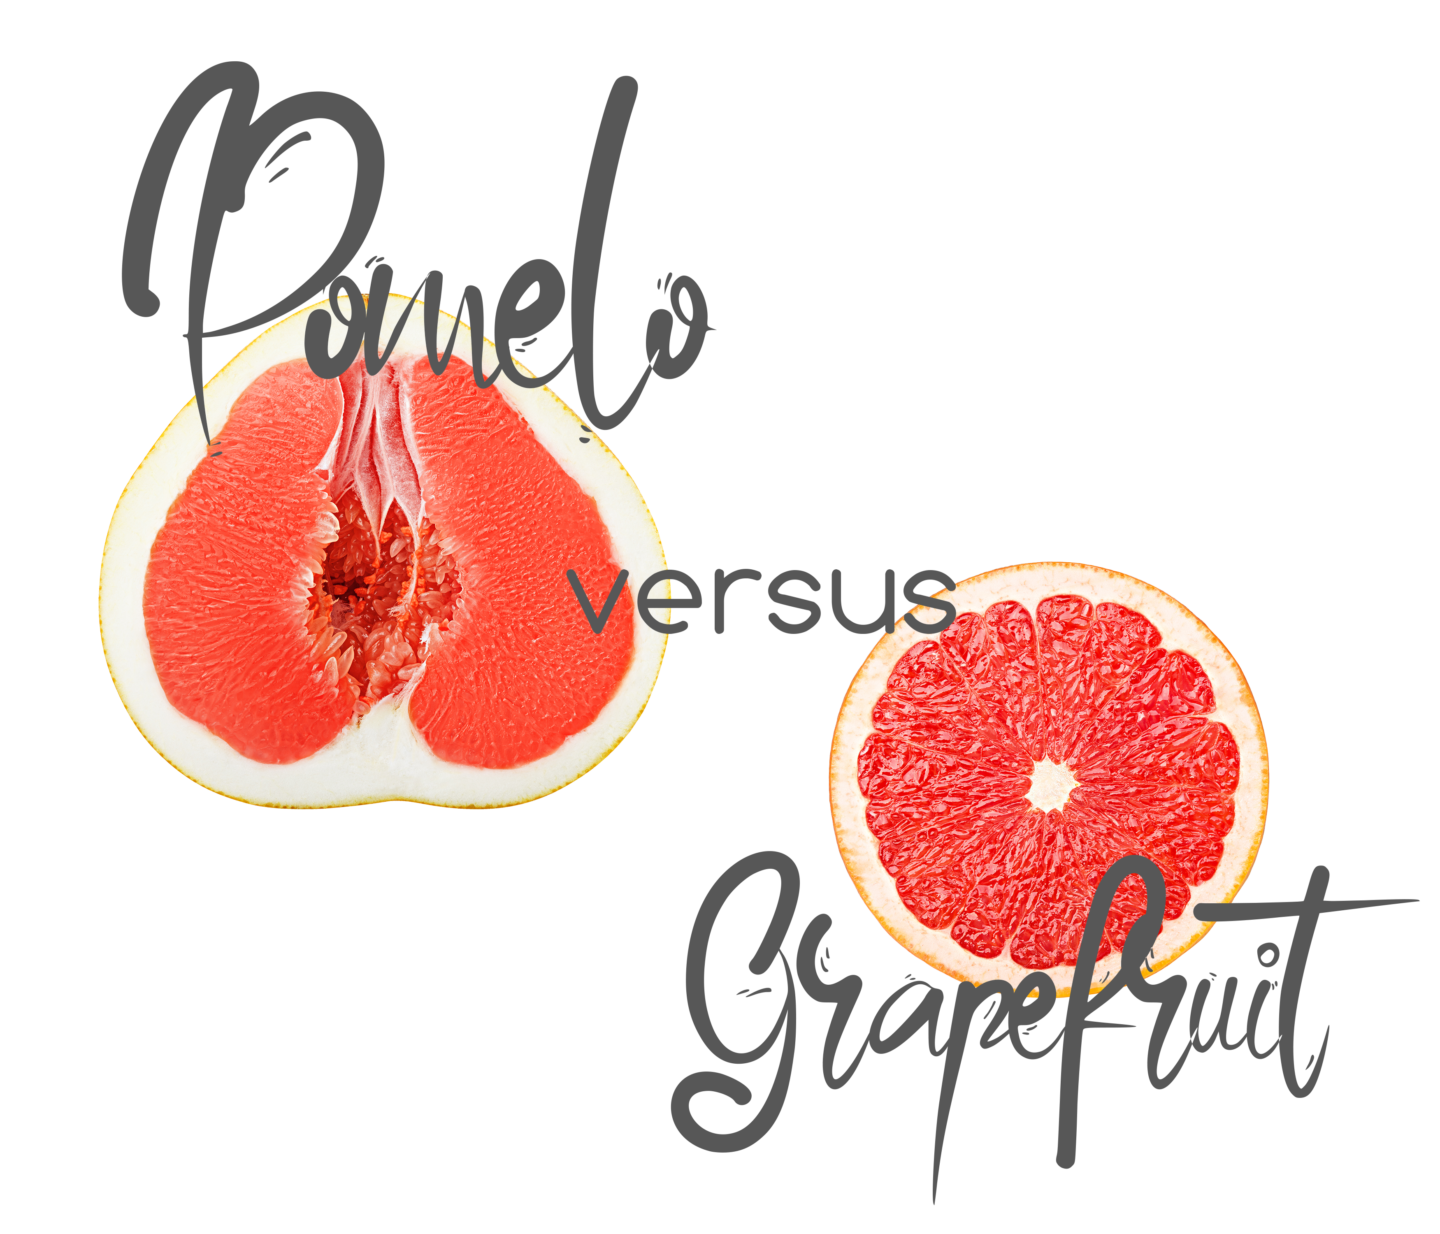 pomelo vs grapefruit